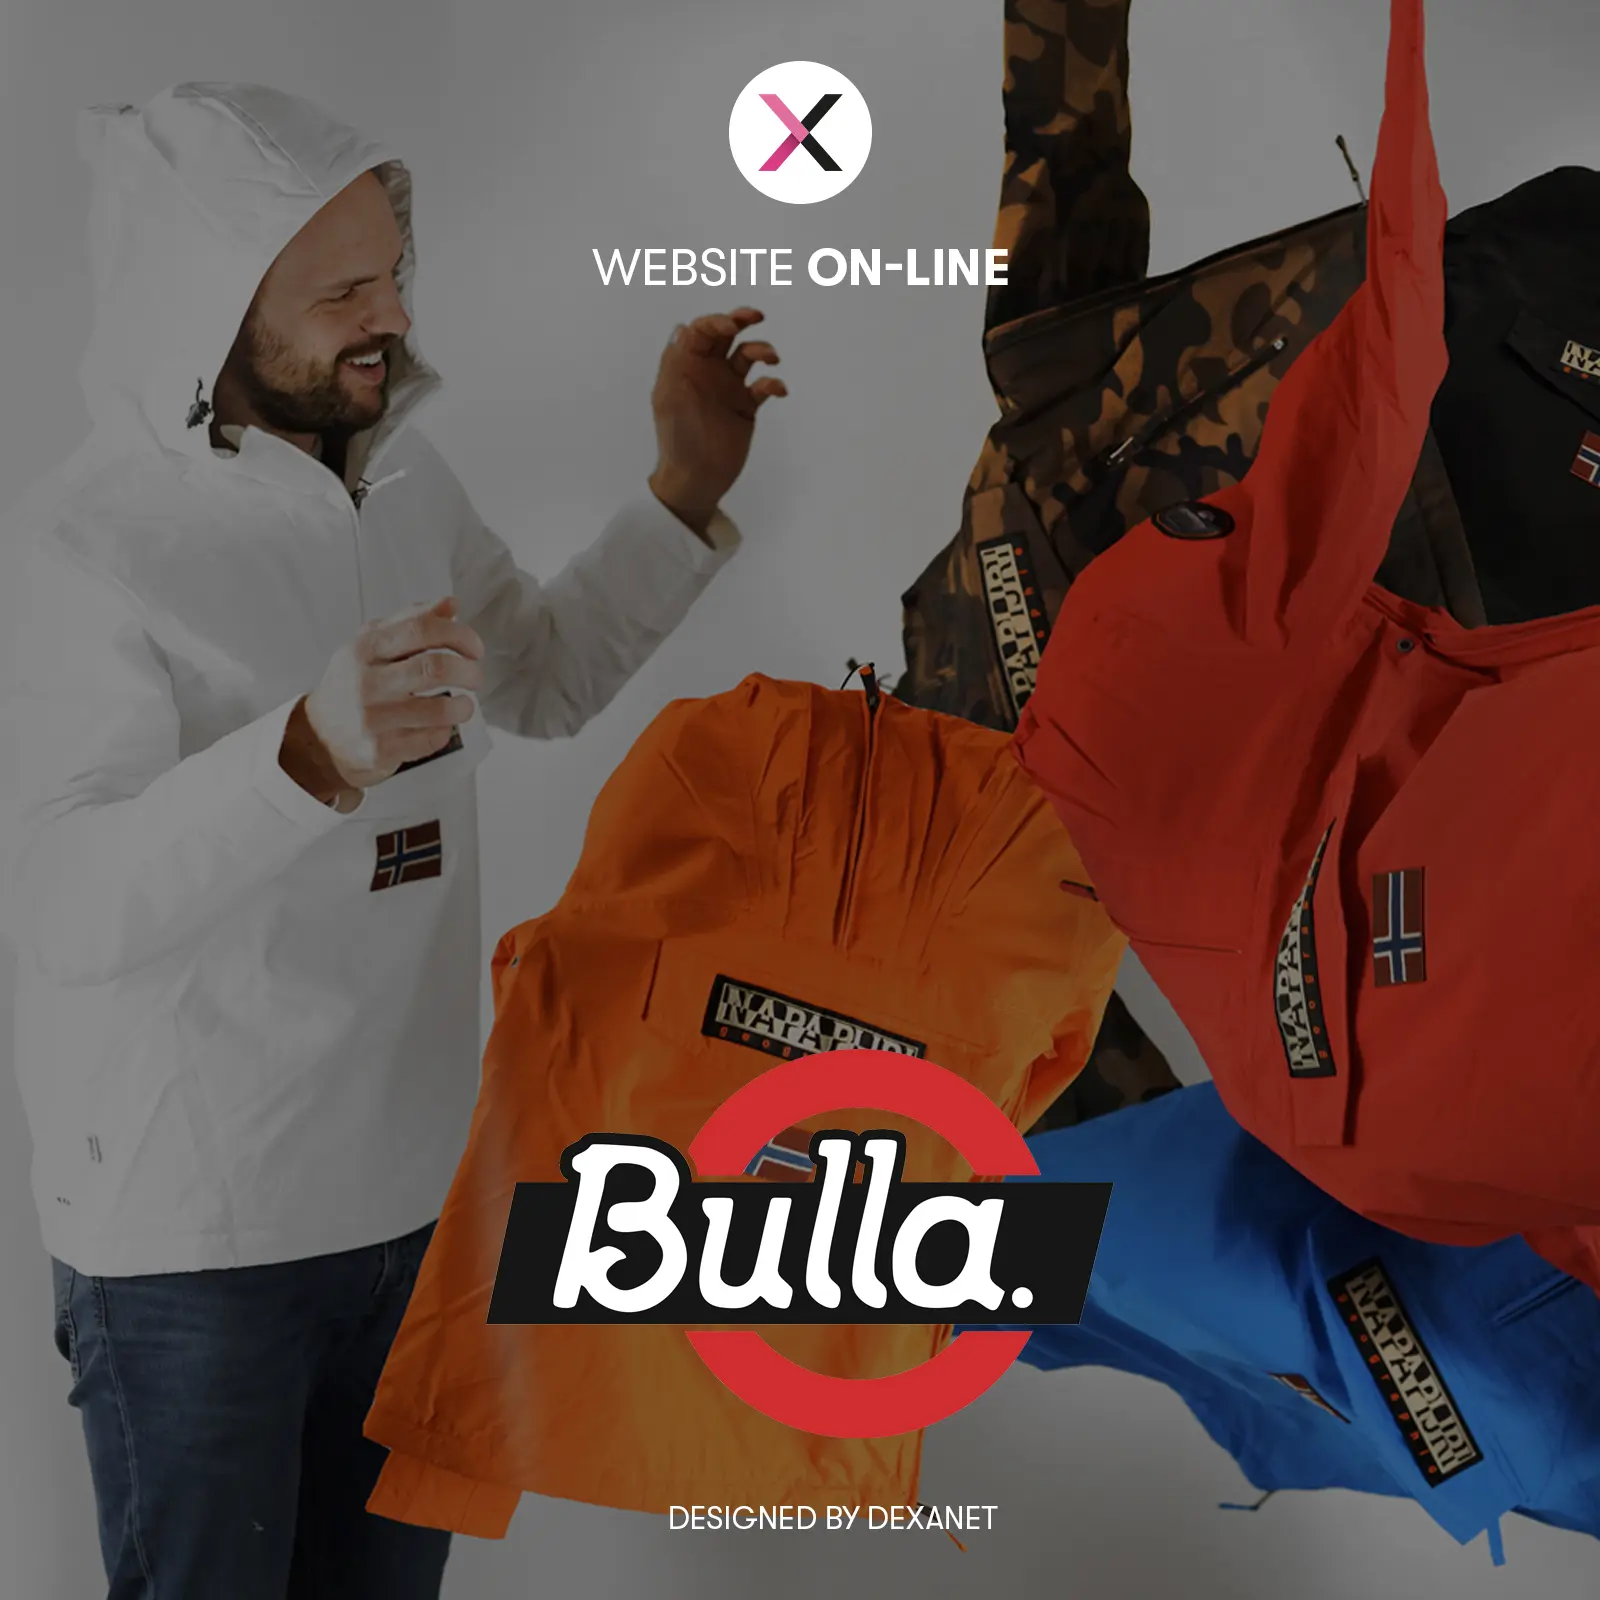 Sei più alla moda tu, con i vestiti di Bulla, o Bulla con il nuovo e-commerce in Magento?